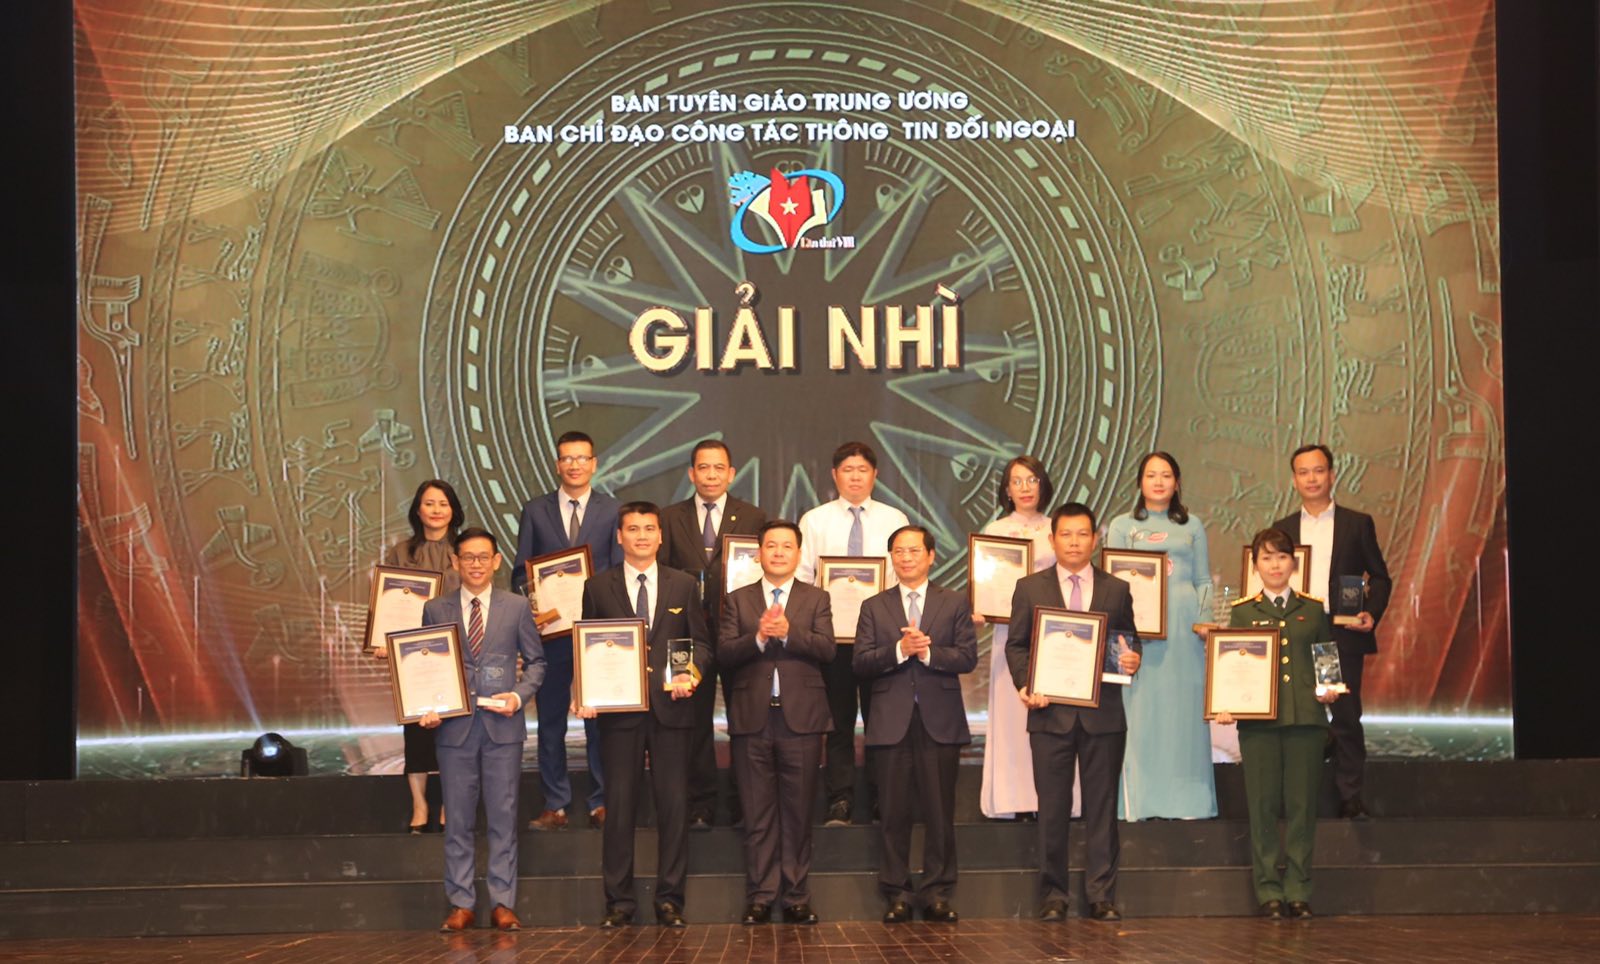 Đại diện lãnh đạo Tổng công ty Hàng không Việt Nam nhận Giải thưởng toàn quốc về Thông tin đối ngoại lần thứ VIII.